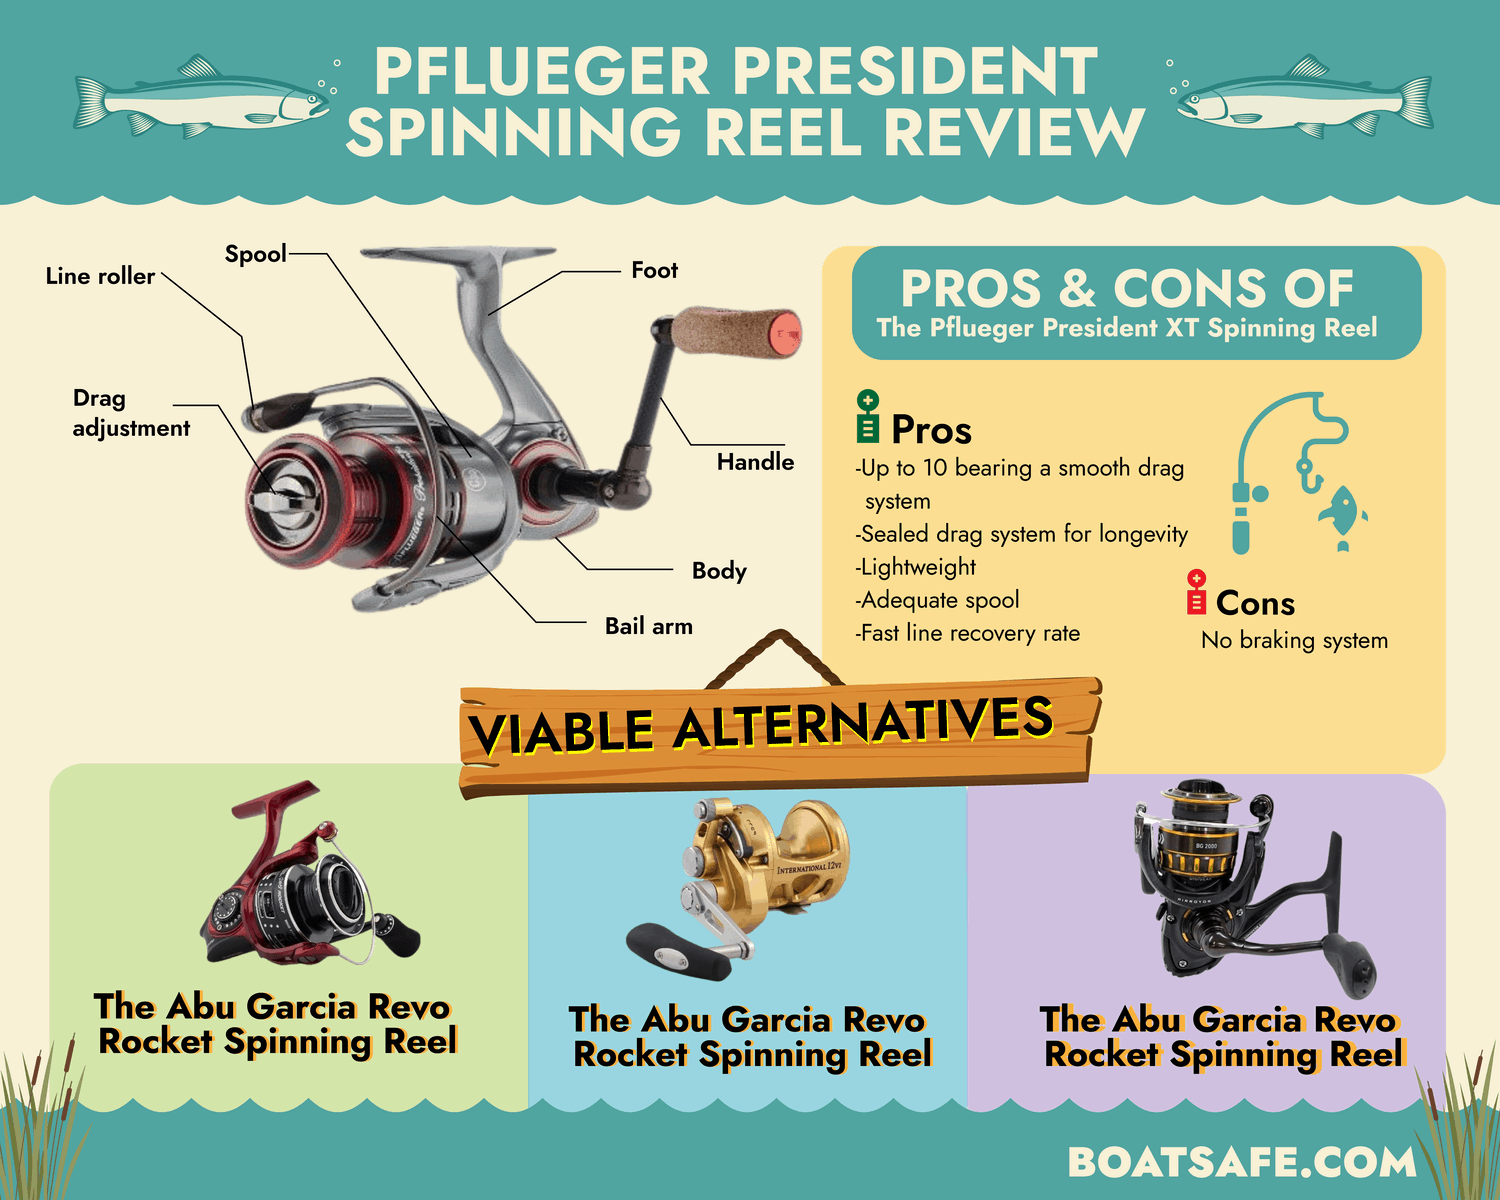 Pflueger President Spinning Reel Review